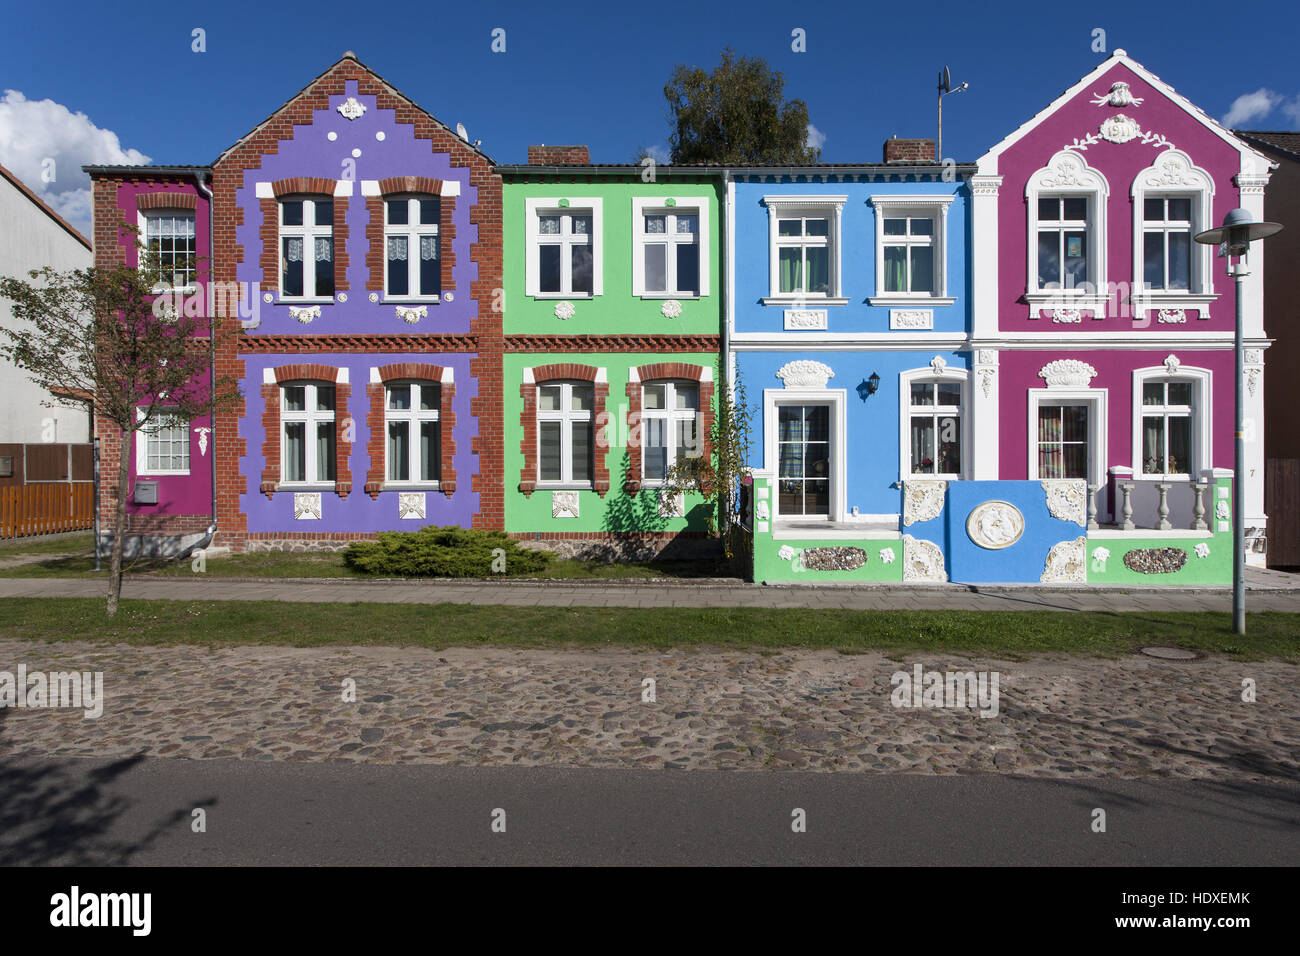 Vieux bâtiment rénové aux couleurs vives, fürstenberg/Havel, haute-havel, Brandebourg, Allemagne Banque D'Images